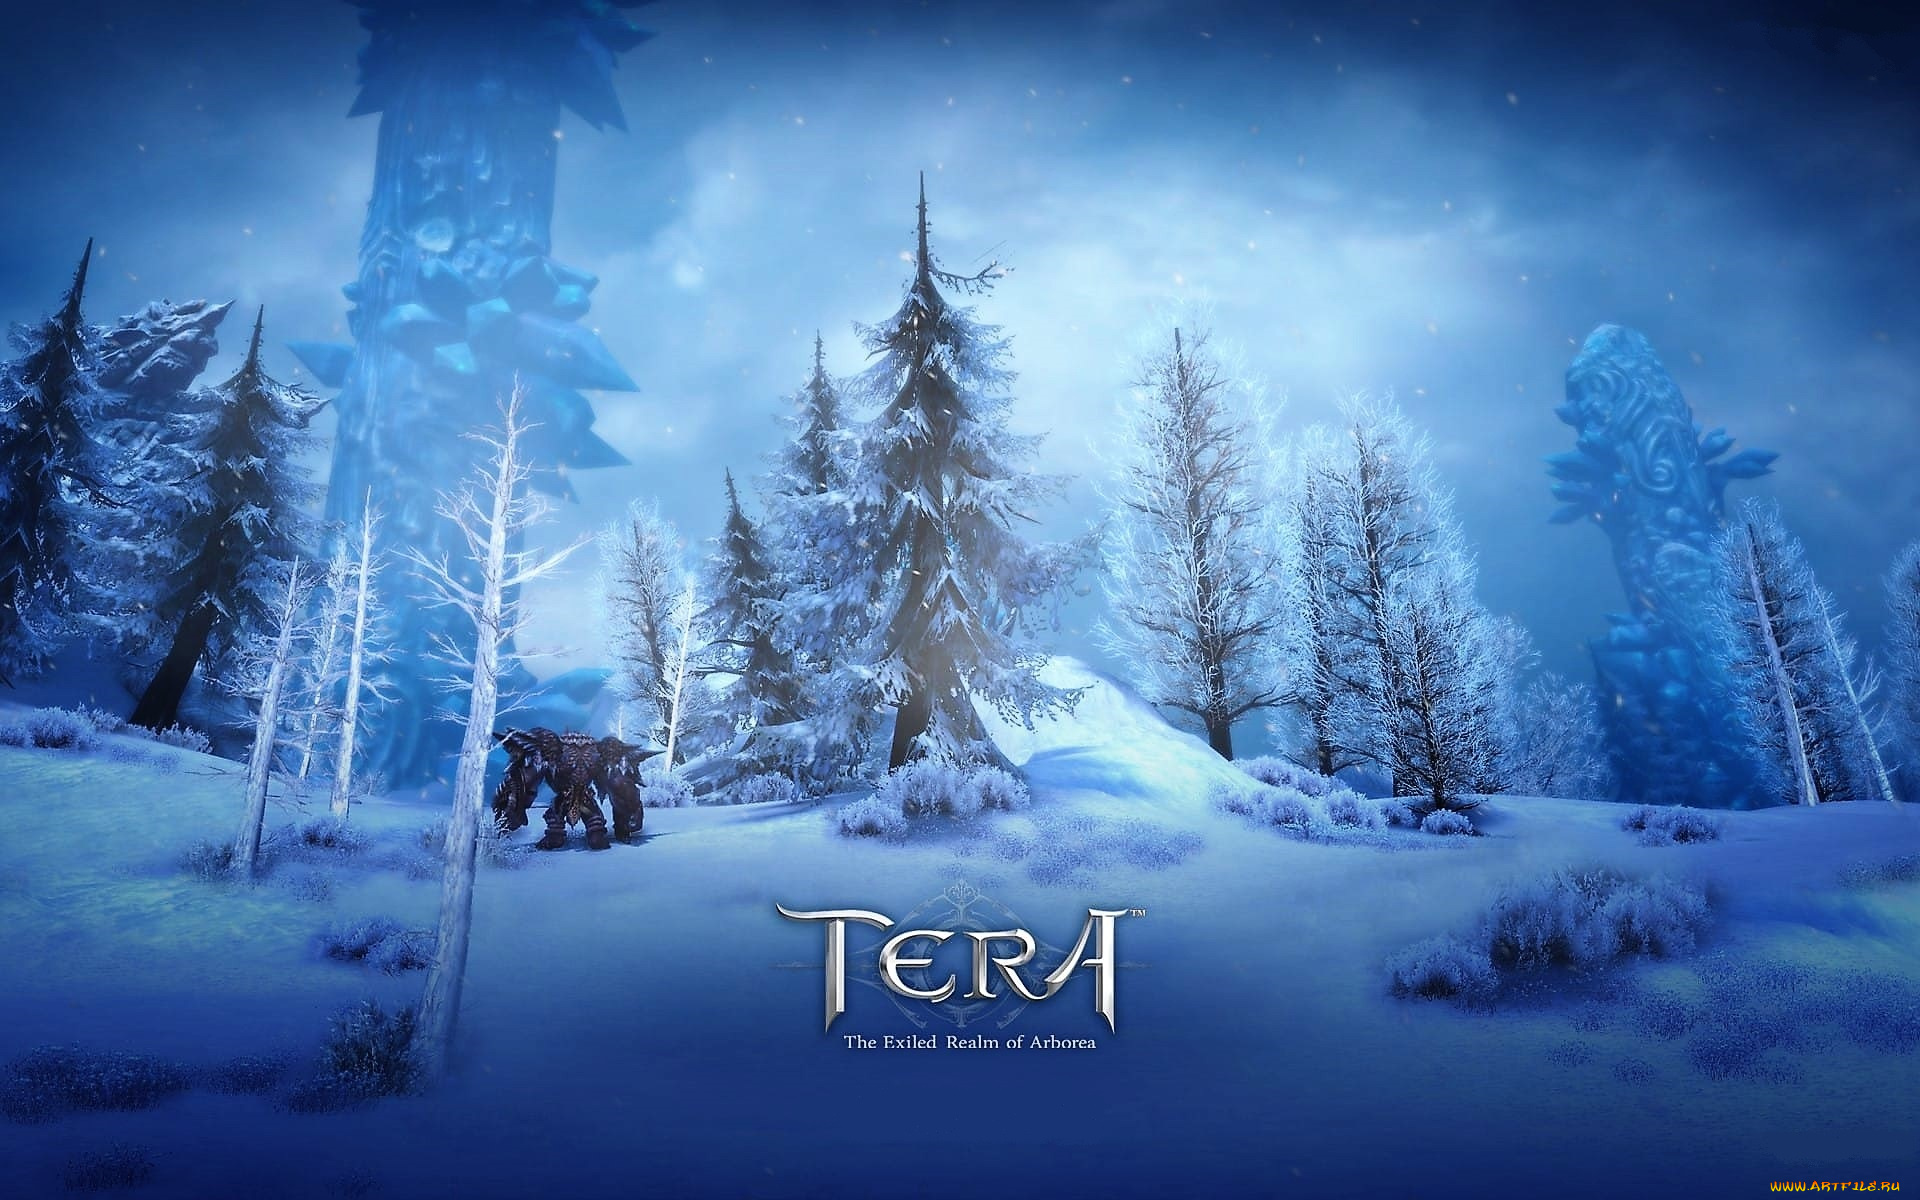 видео, игры, tera, , the, exiled, realm, of, arborea, лес, зима, снег, существо, башня